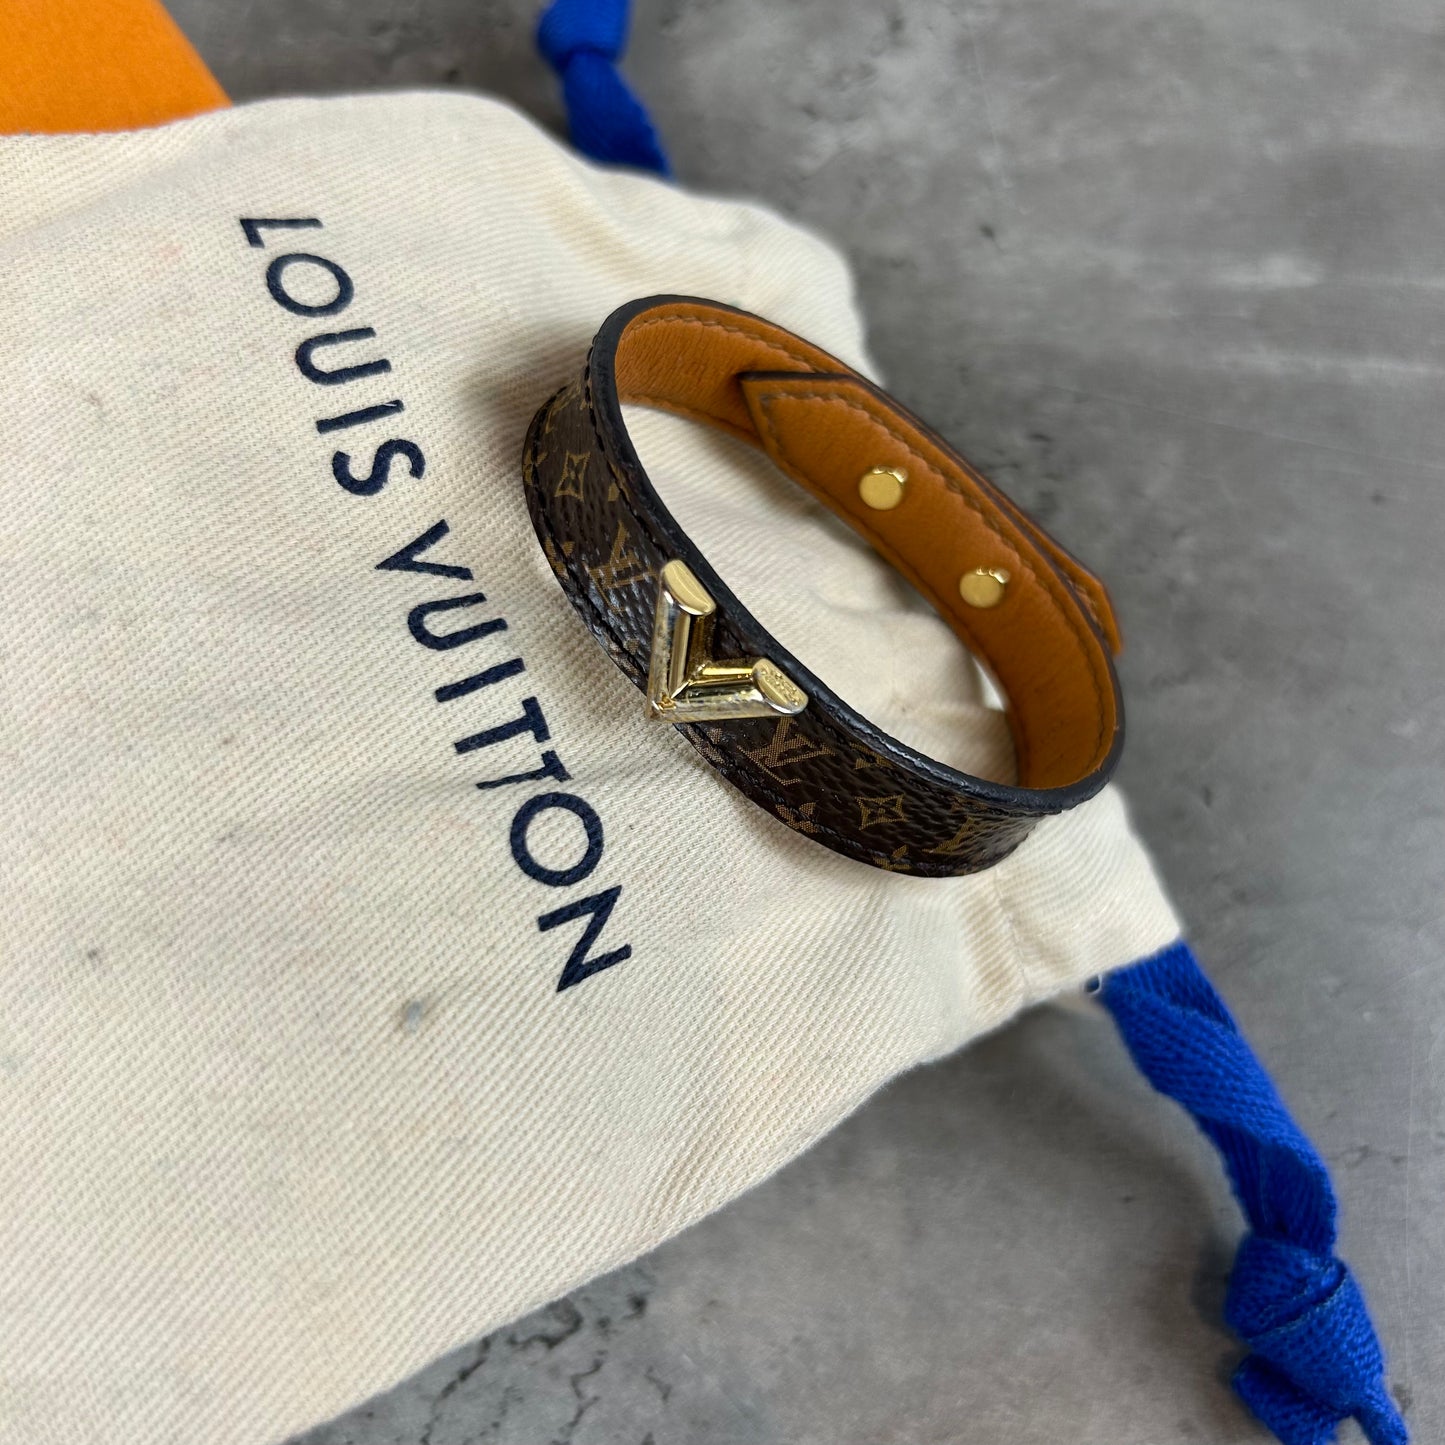 Louis Vuitton Leather Bracelet - Depop